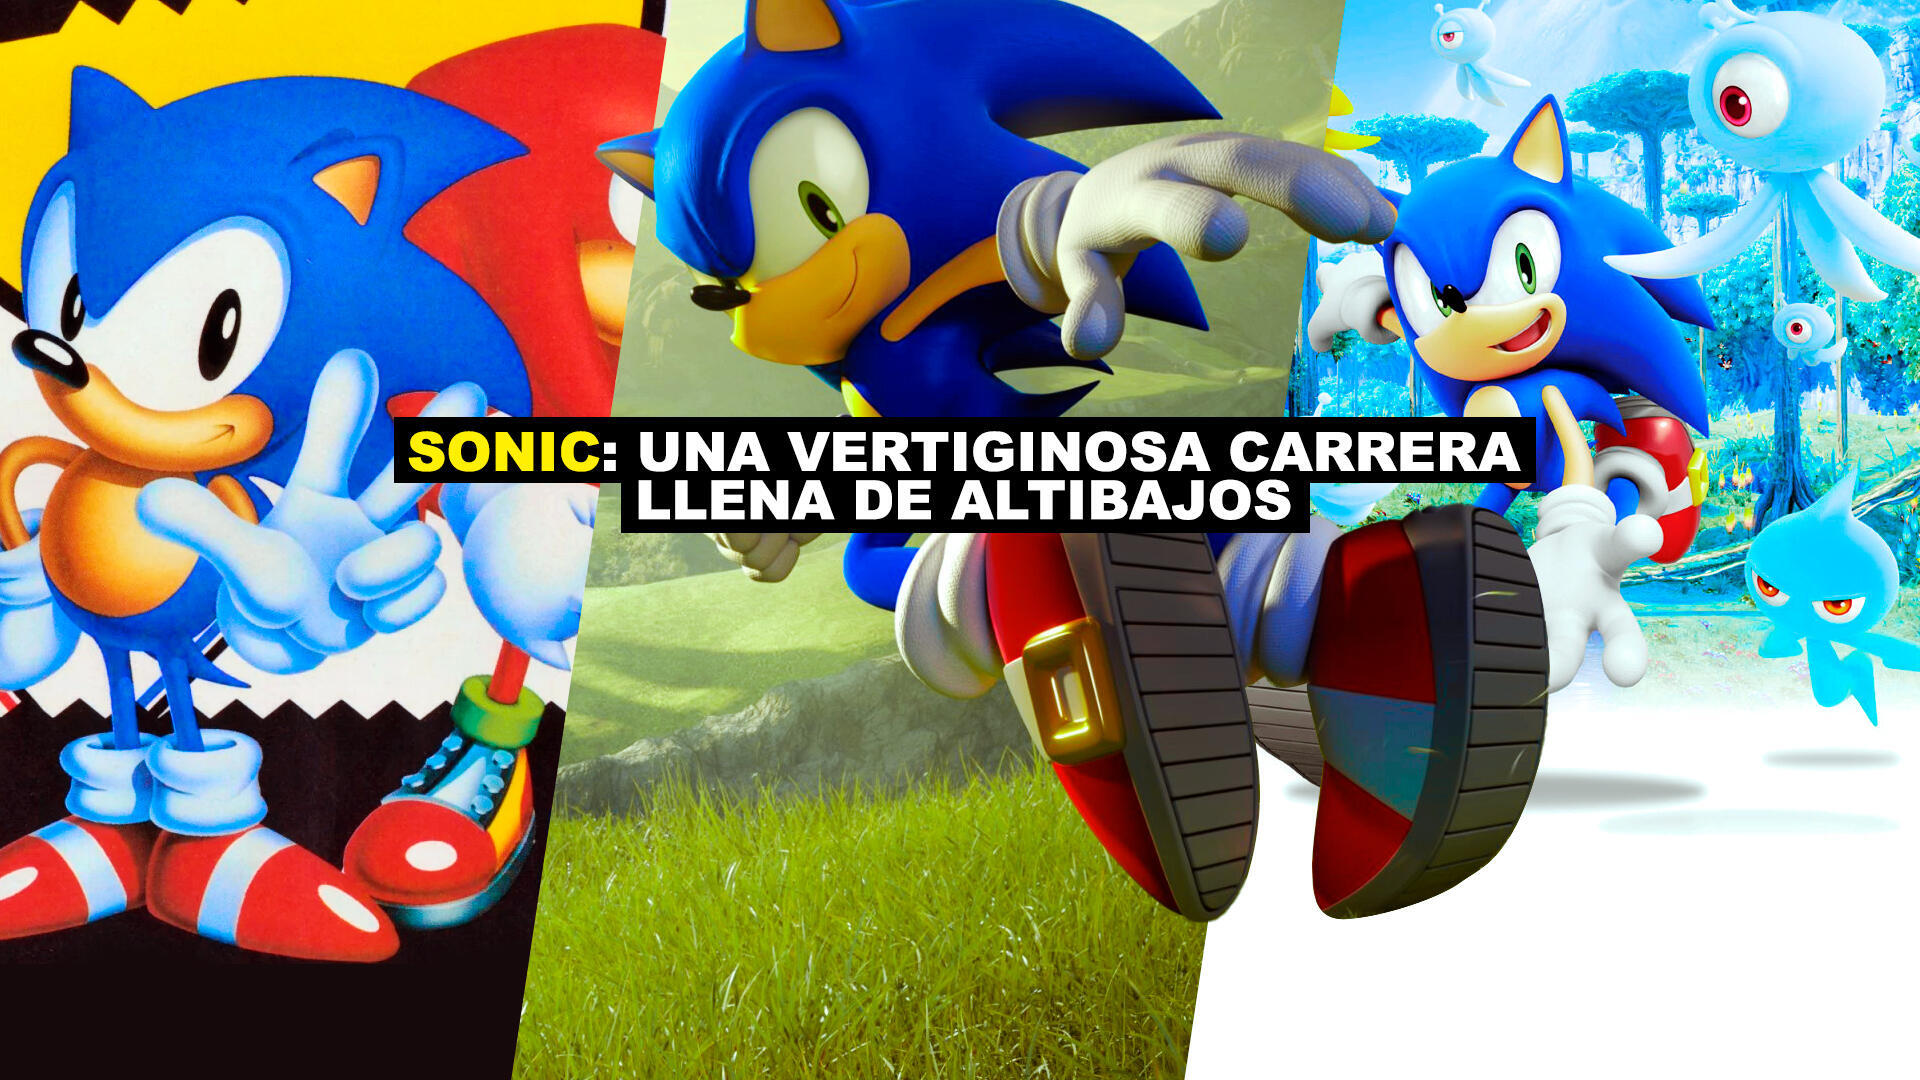 Sonic: Una vertiginosa carrera llena de altibajos